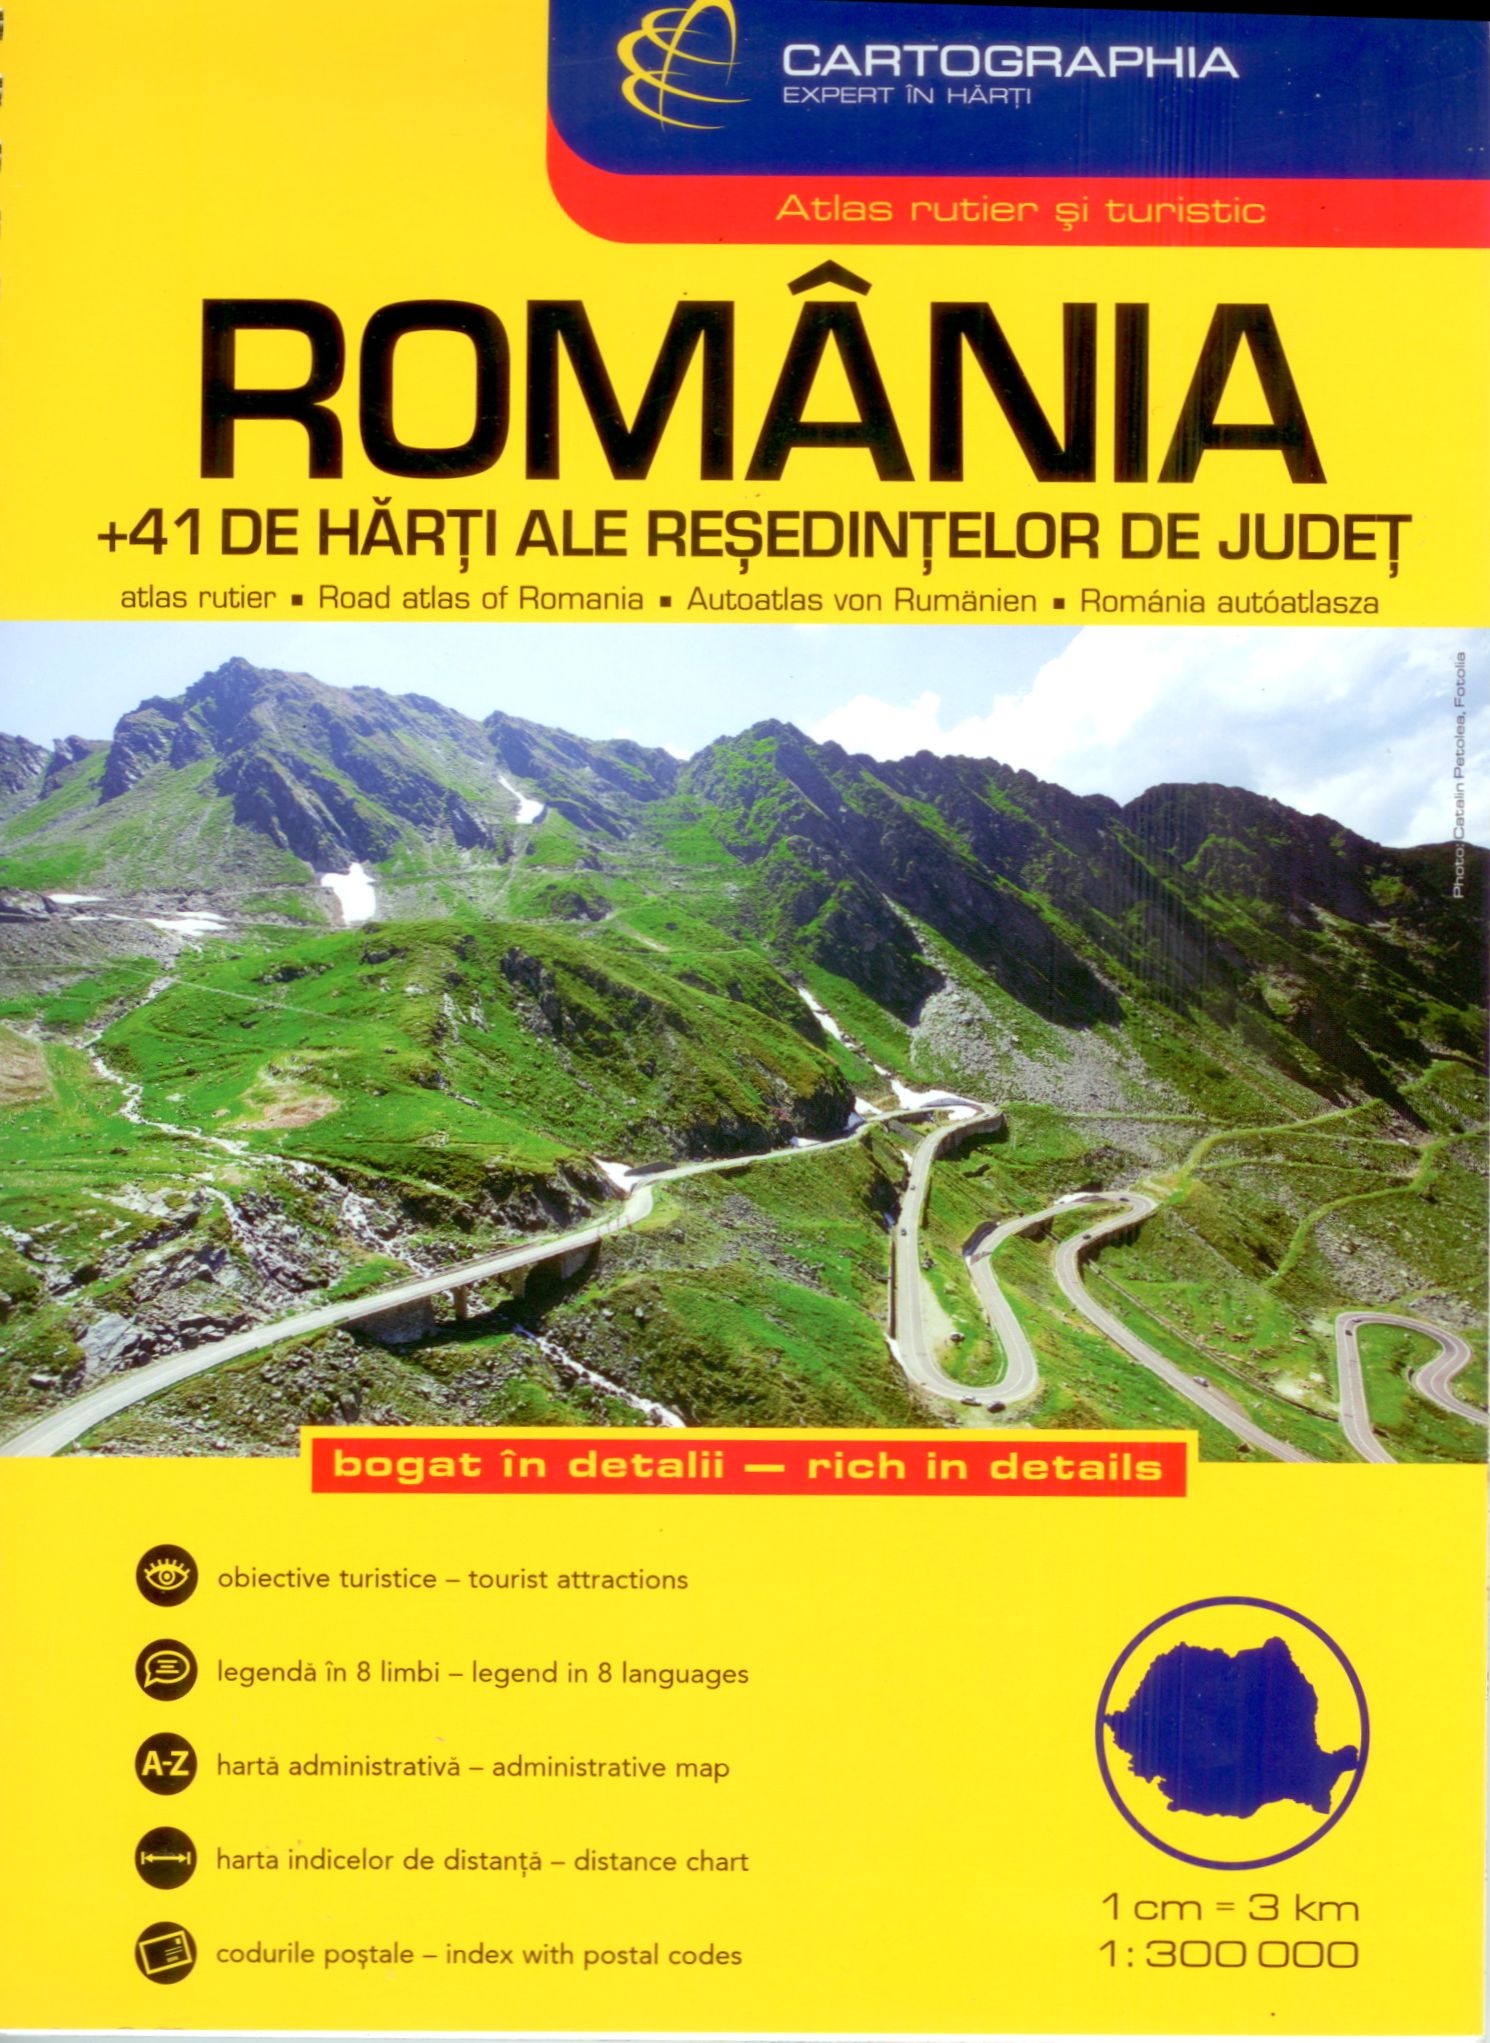 Romania road atlas 1:300.000 cover